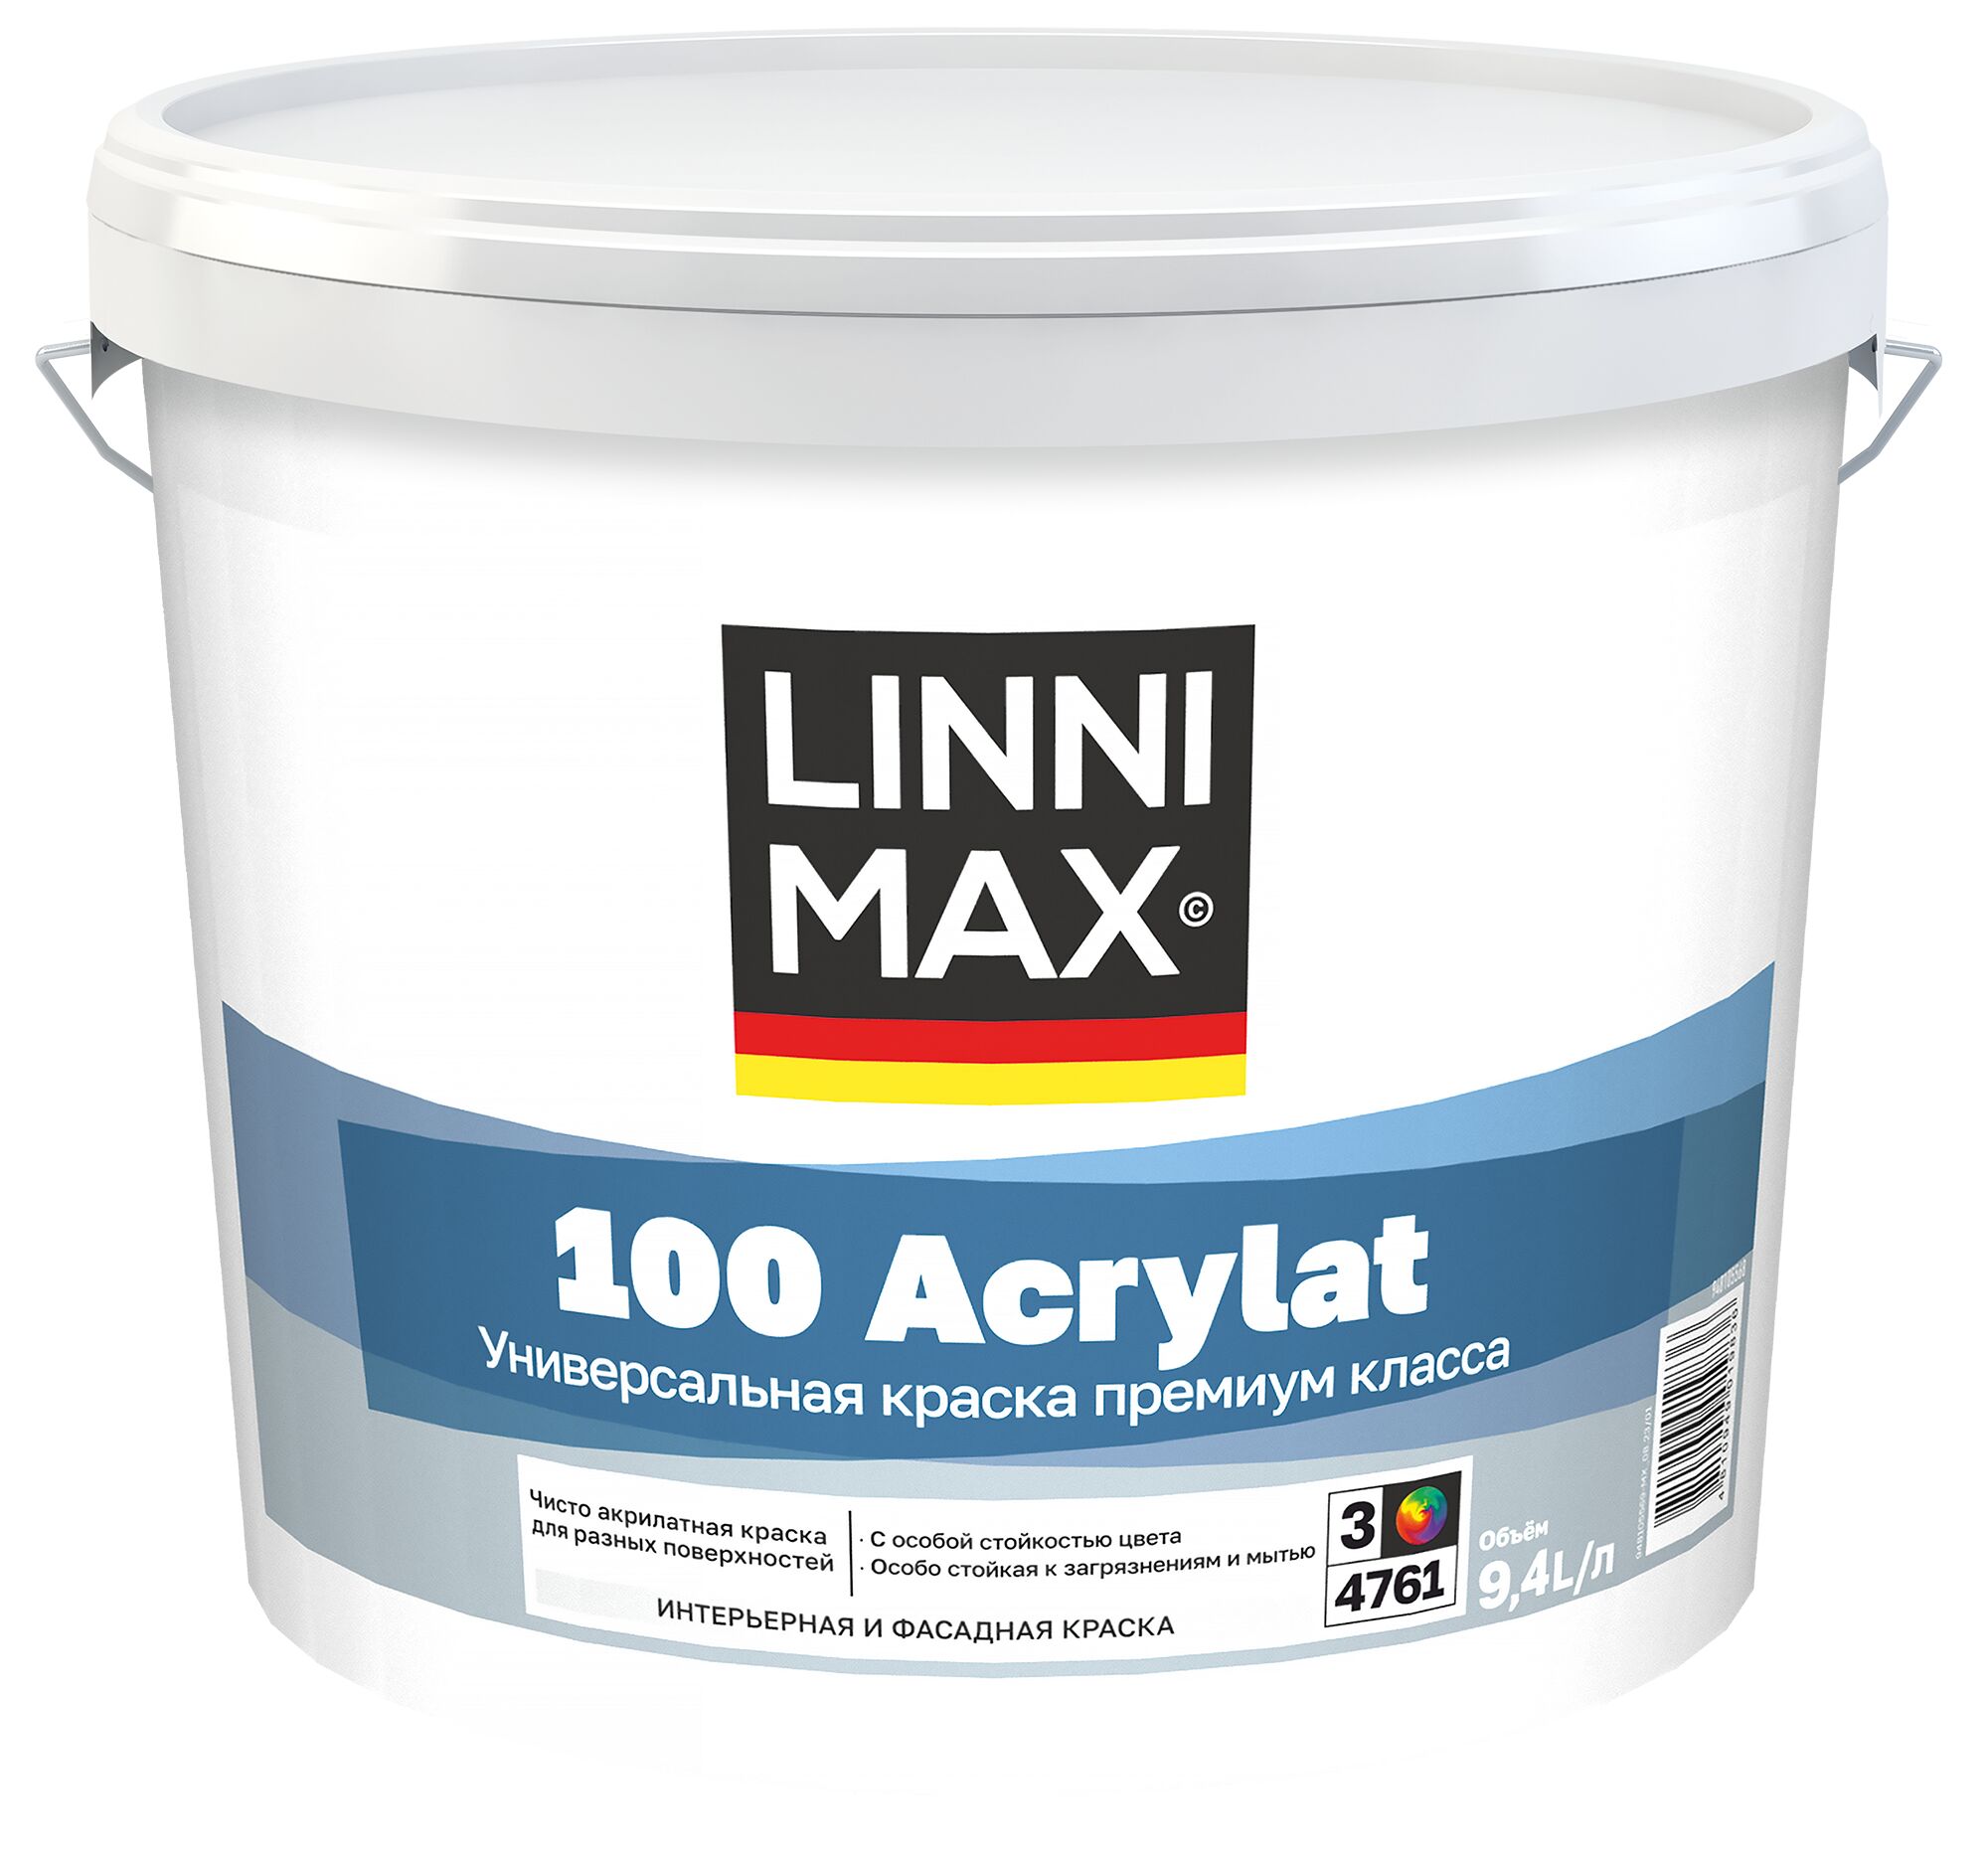 100 Acrylat 9,4л Краска водно-дисперсионная для наружных и внутренних работ База3 LINNIMAX